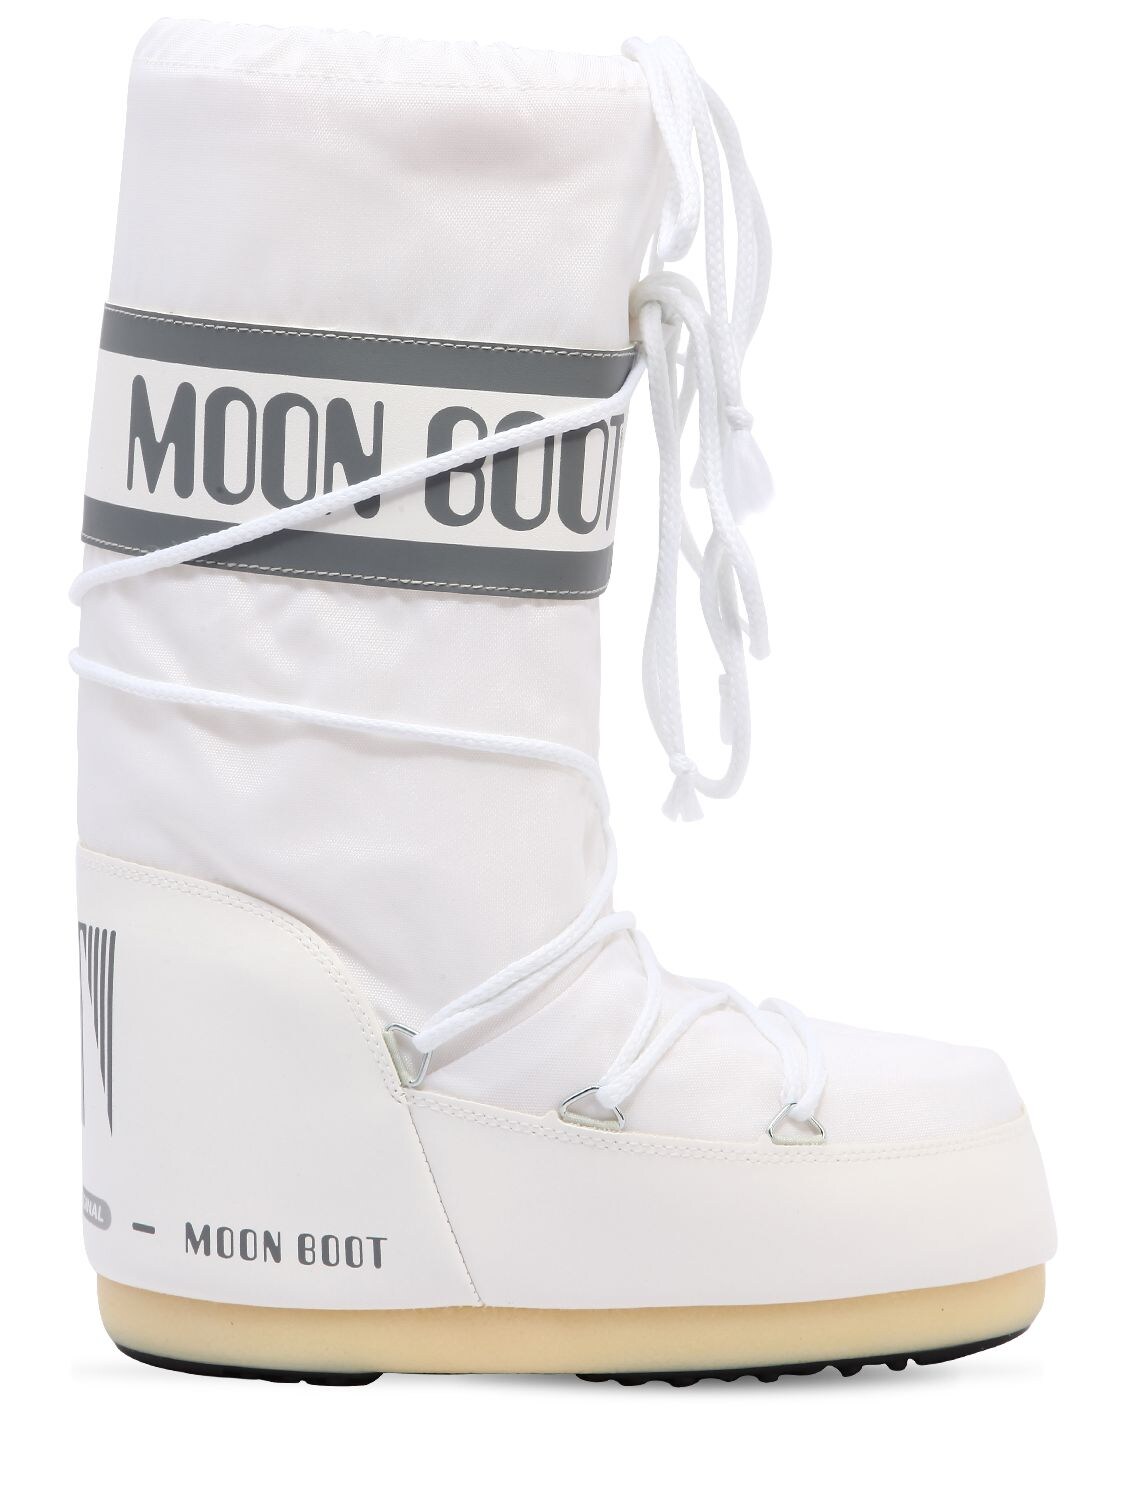 MOON BOOT "CLASSIC"尼龙防水雪地靴,70I0HE001-MDA20